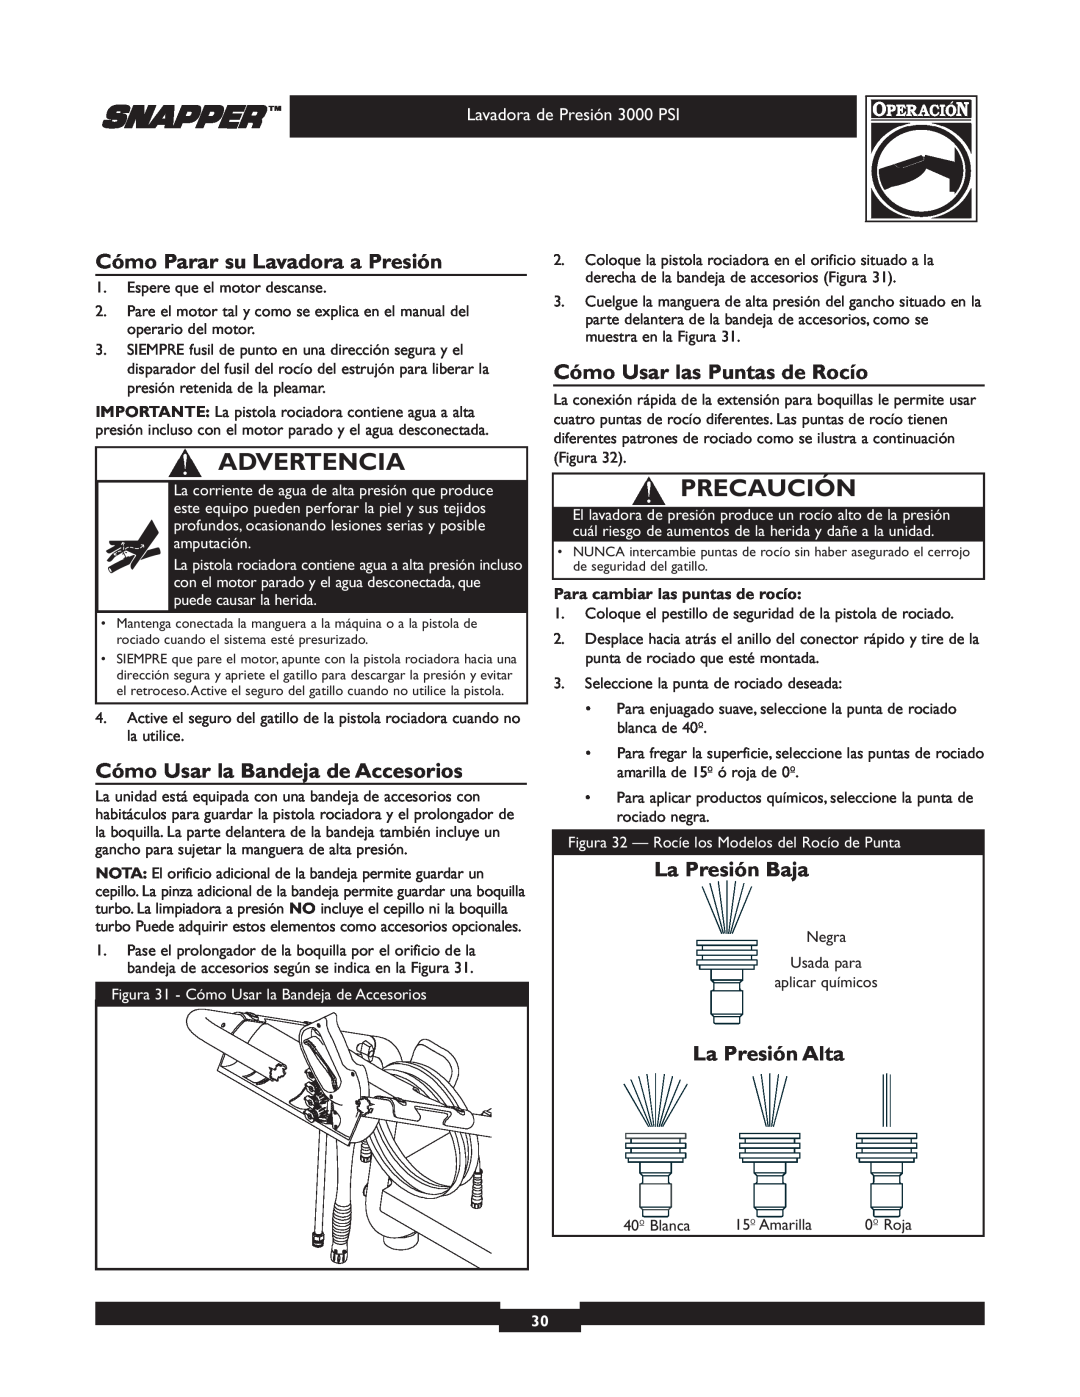 Snapper 020231-2 manual Cómo Parar su Lavadora a Presión, Cómo Usar la Bandeja de Accesorios, Cómo Usar las Puntas de Rocío 